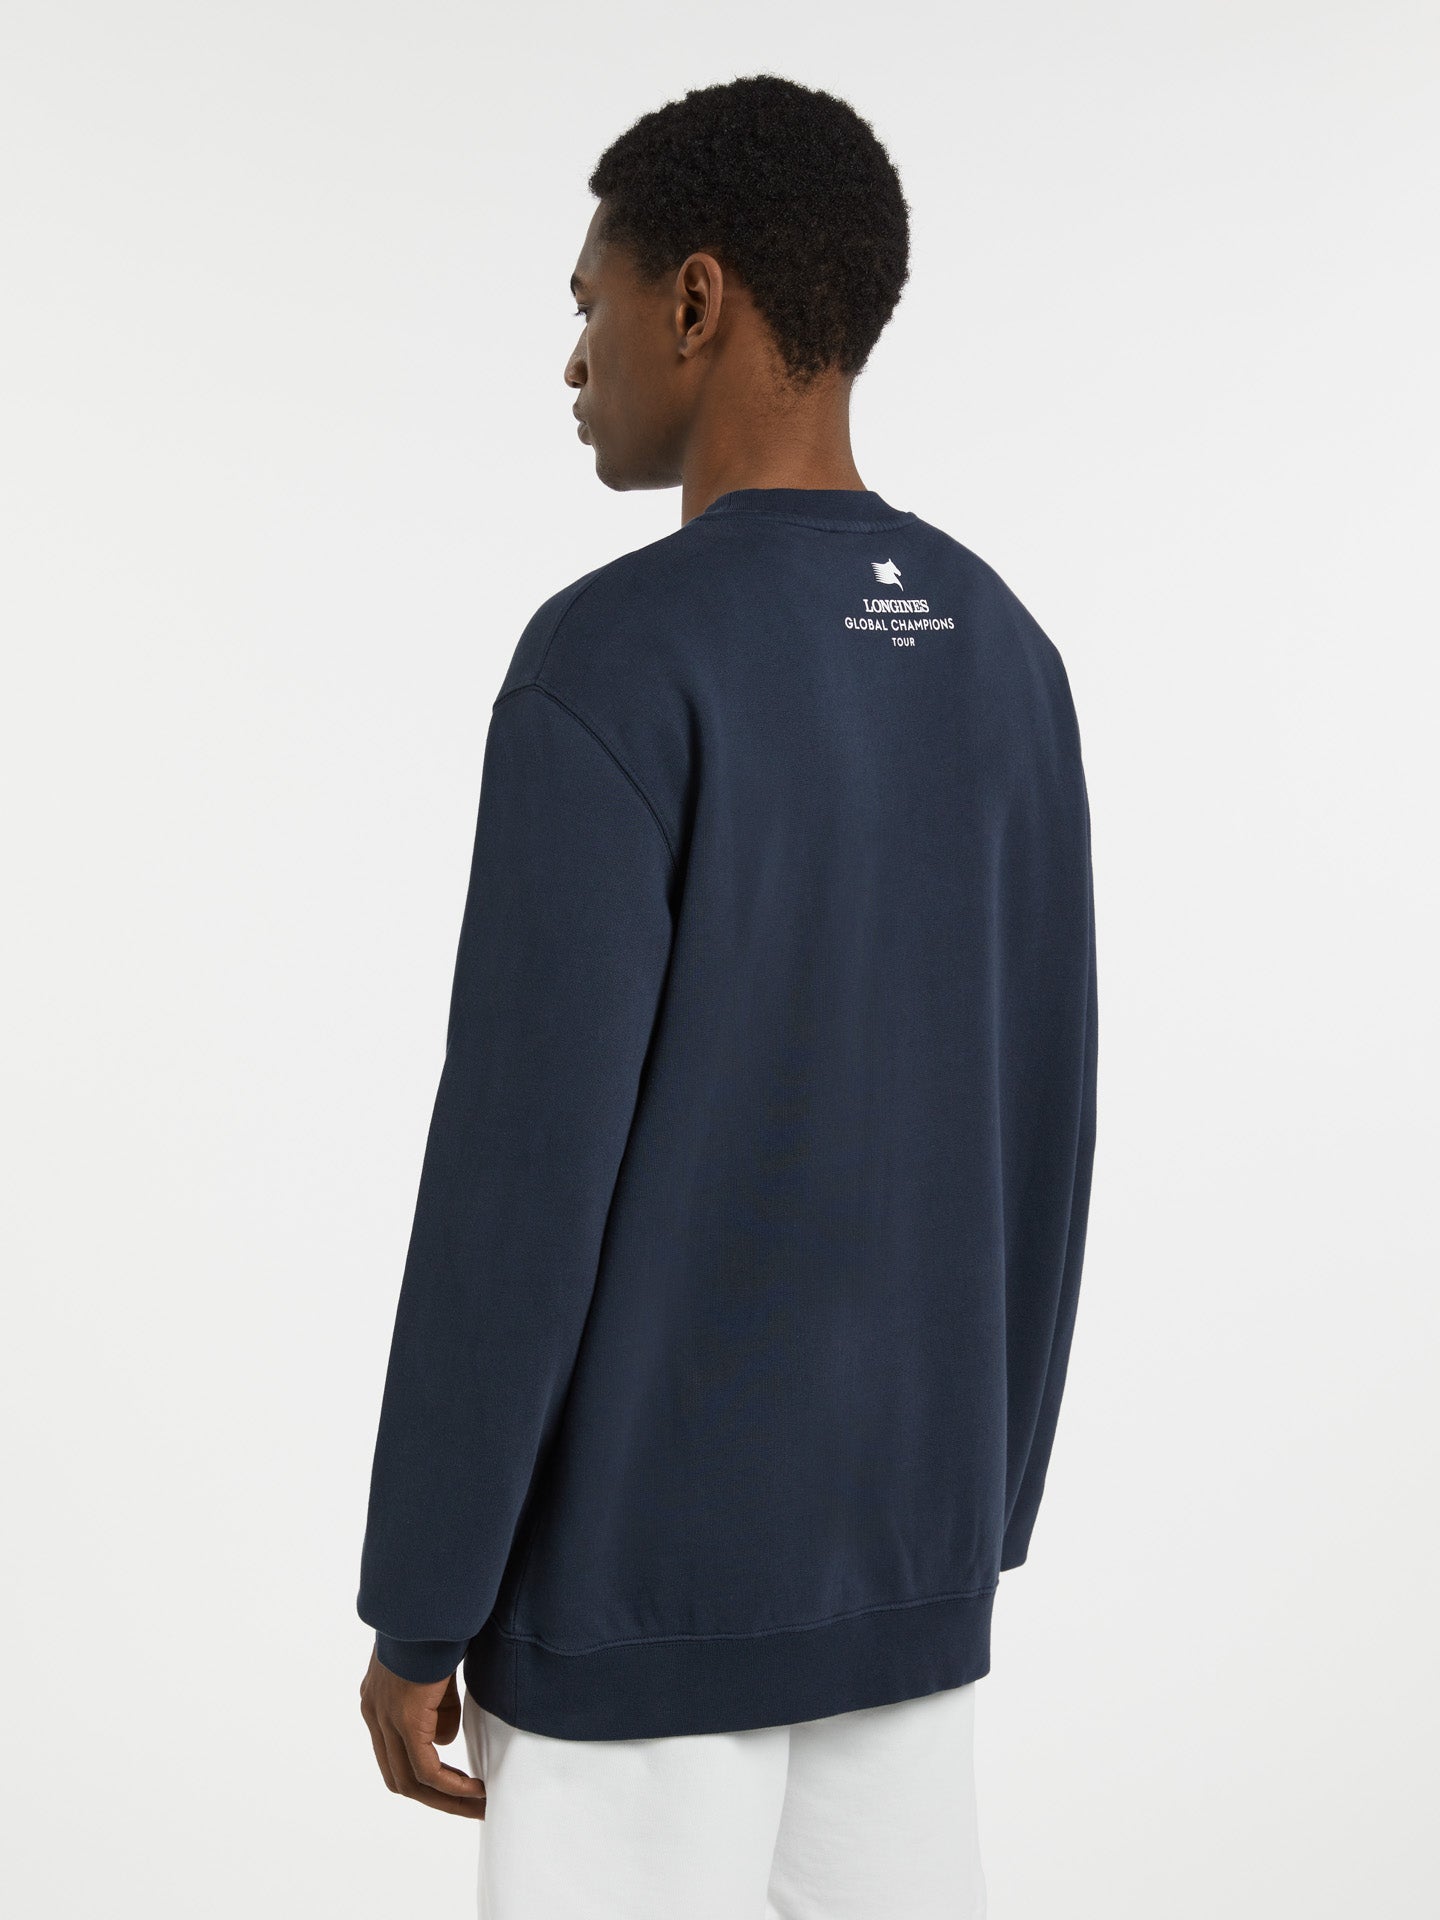 LGCT Essentials Unisex Sweatshirt - Navy Blue